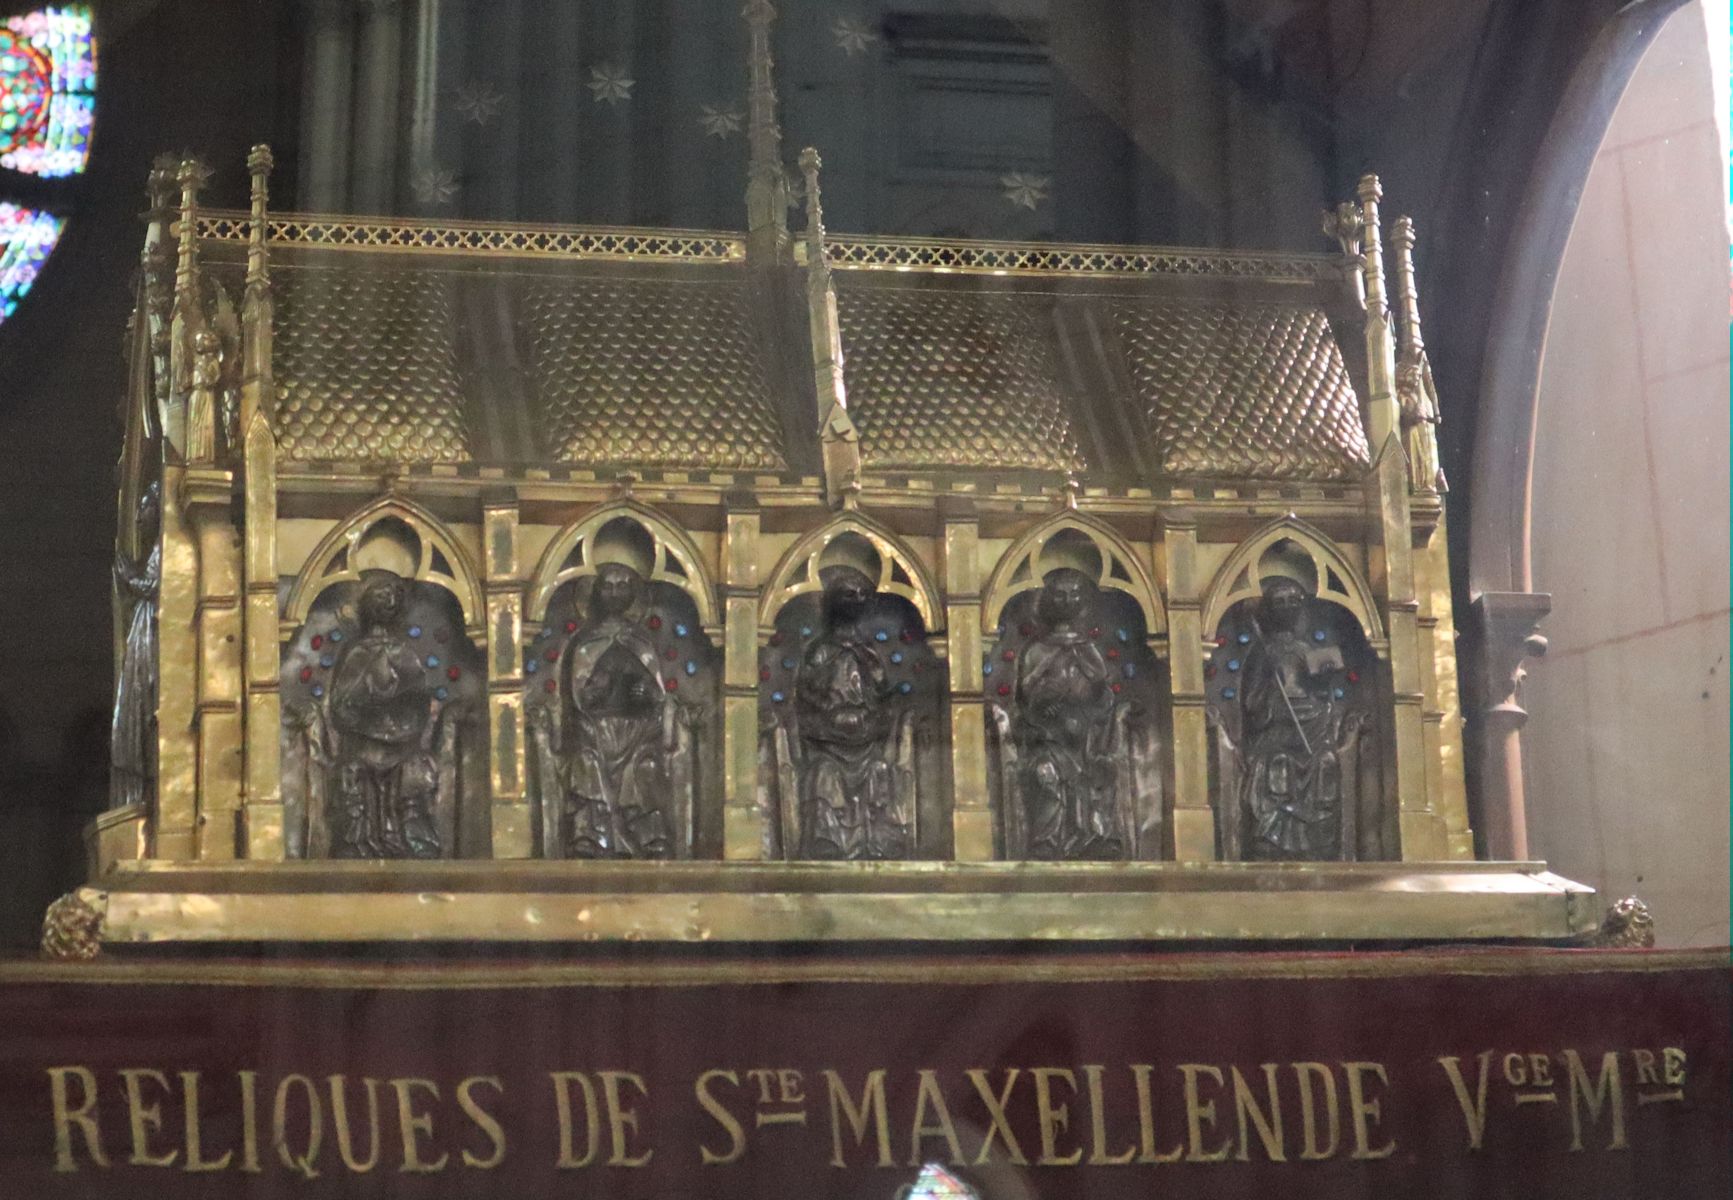 Reliquienschrein in der Kirche Sainte Maxellende in Caudry